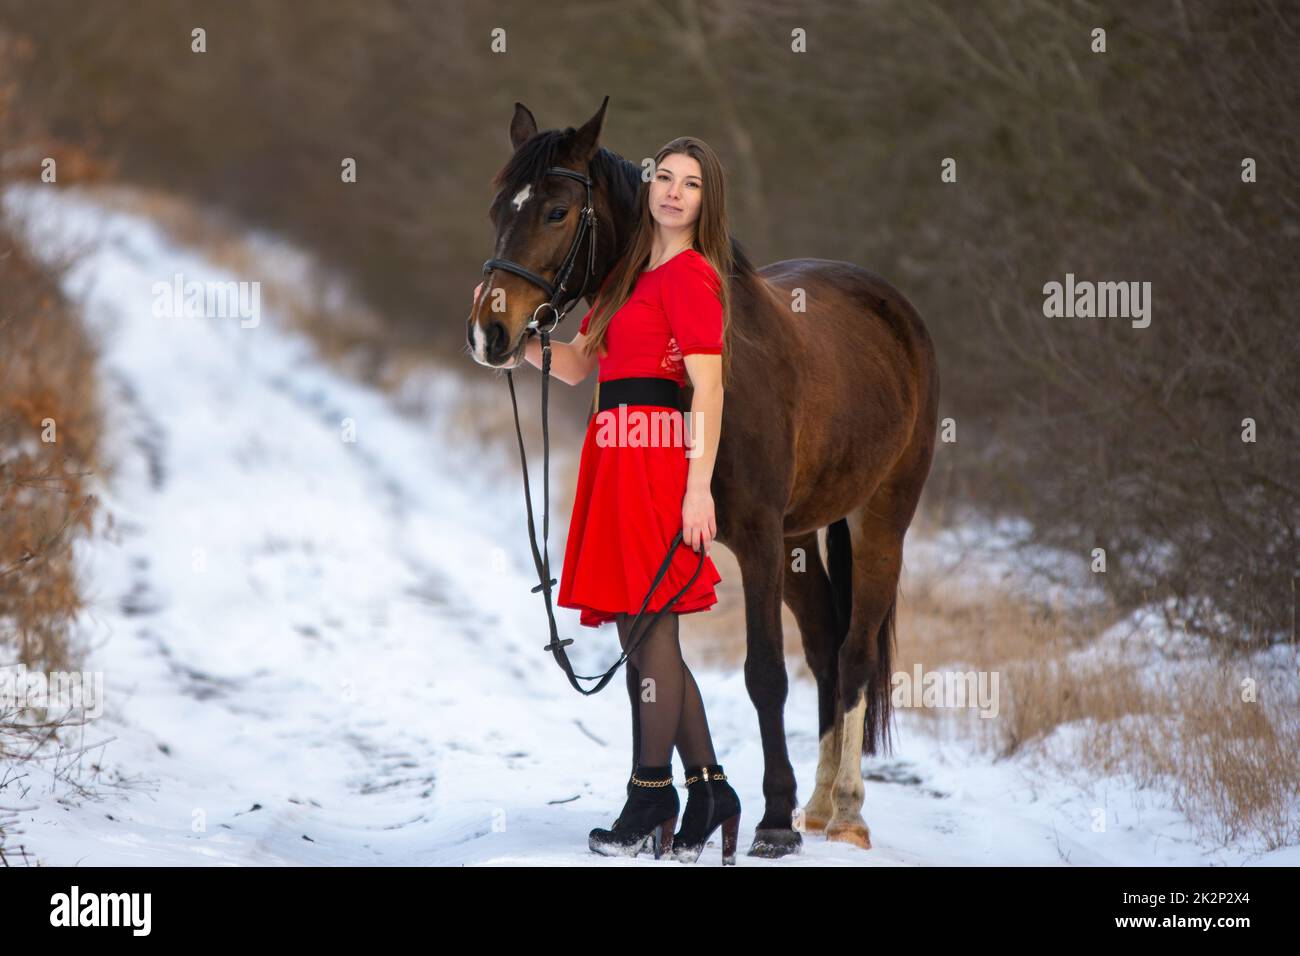 Ein hübsches Mädchen in einem roten Kleid steht mit einem Pferd vor dem Hintergrund eines Winterwaldes und einer Straße, das Mädchen umarmt das Pferd und schaut in den Rahmen Stockfoto